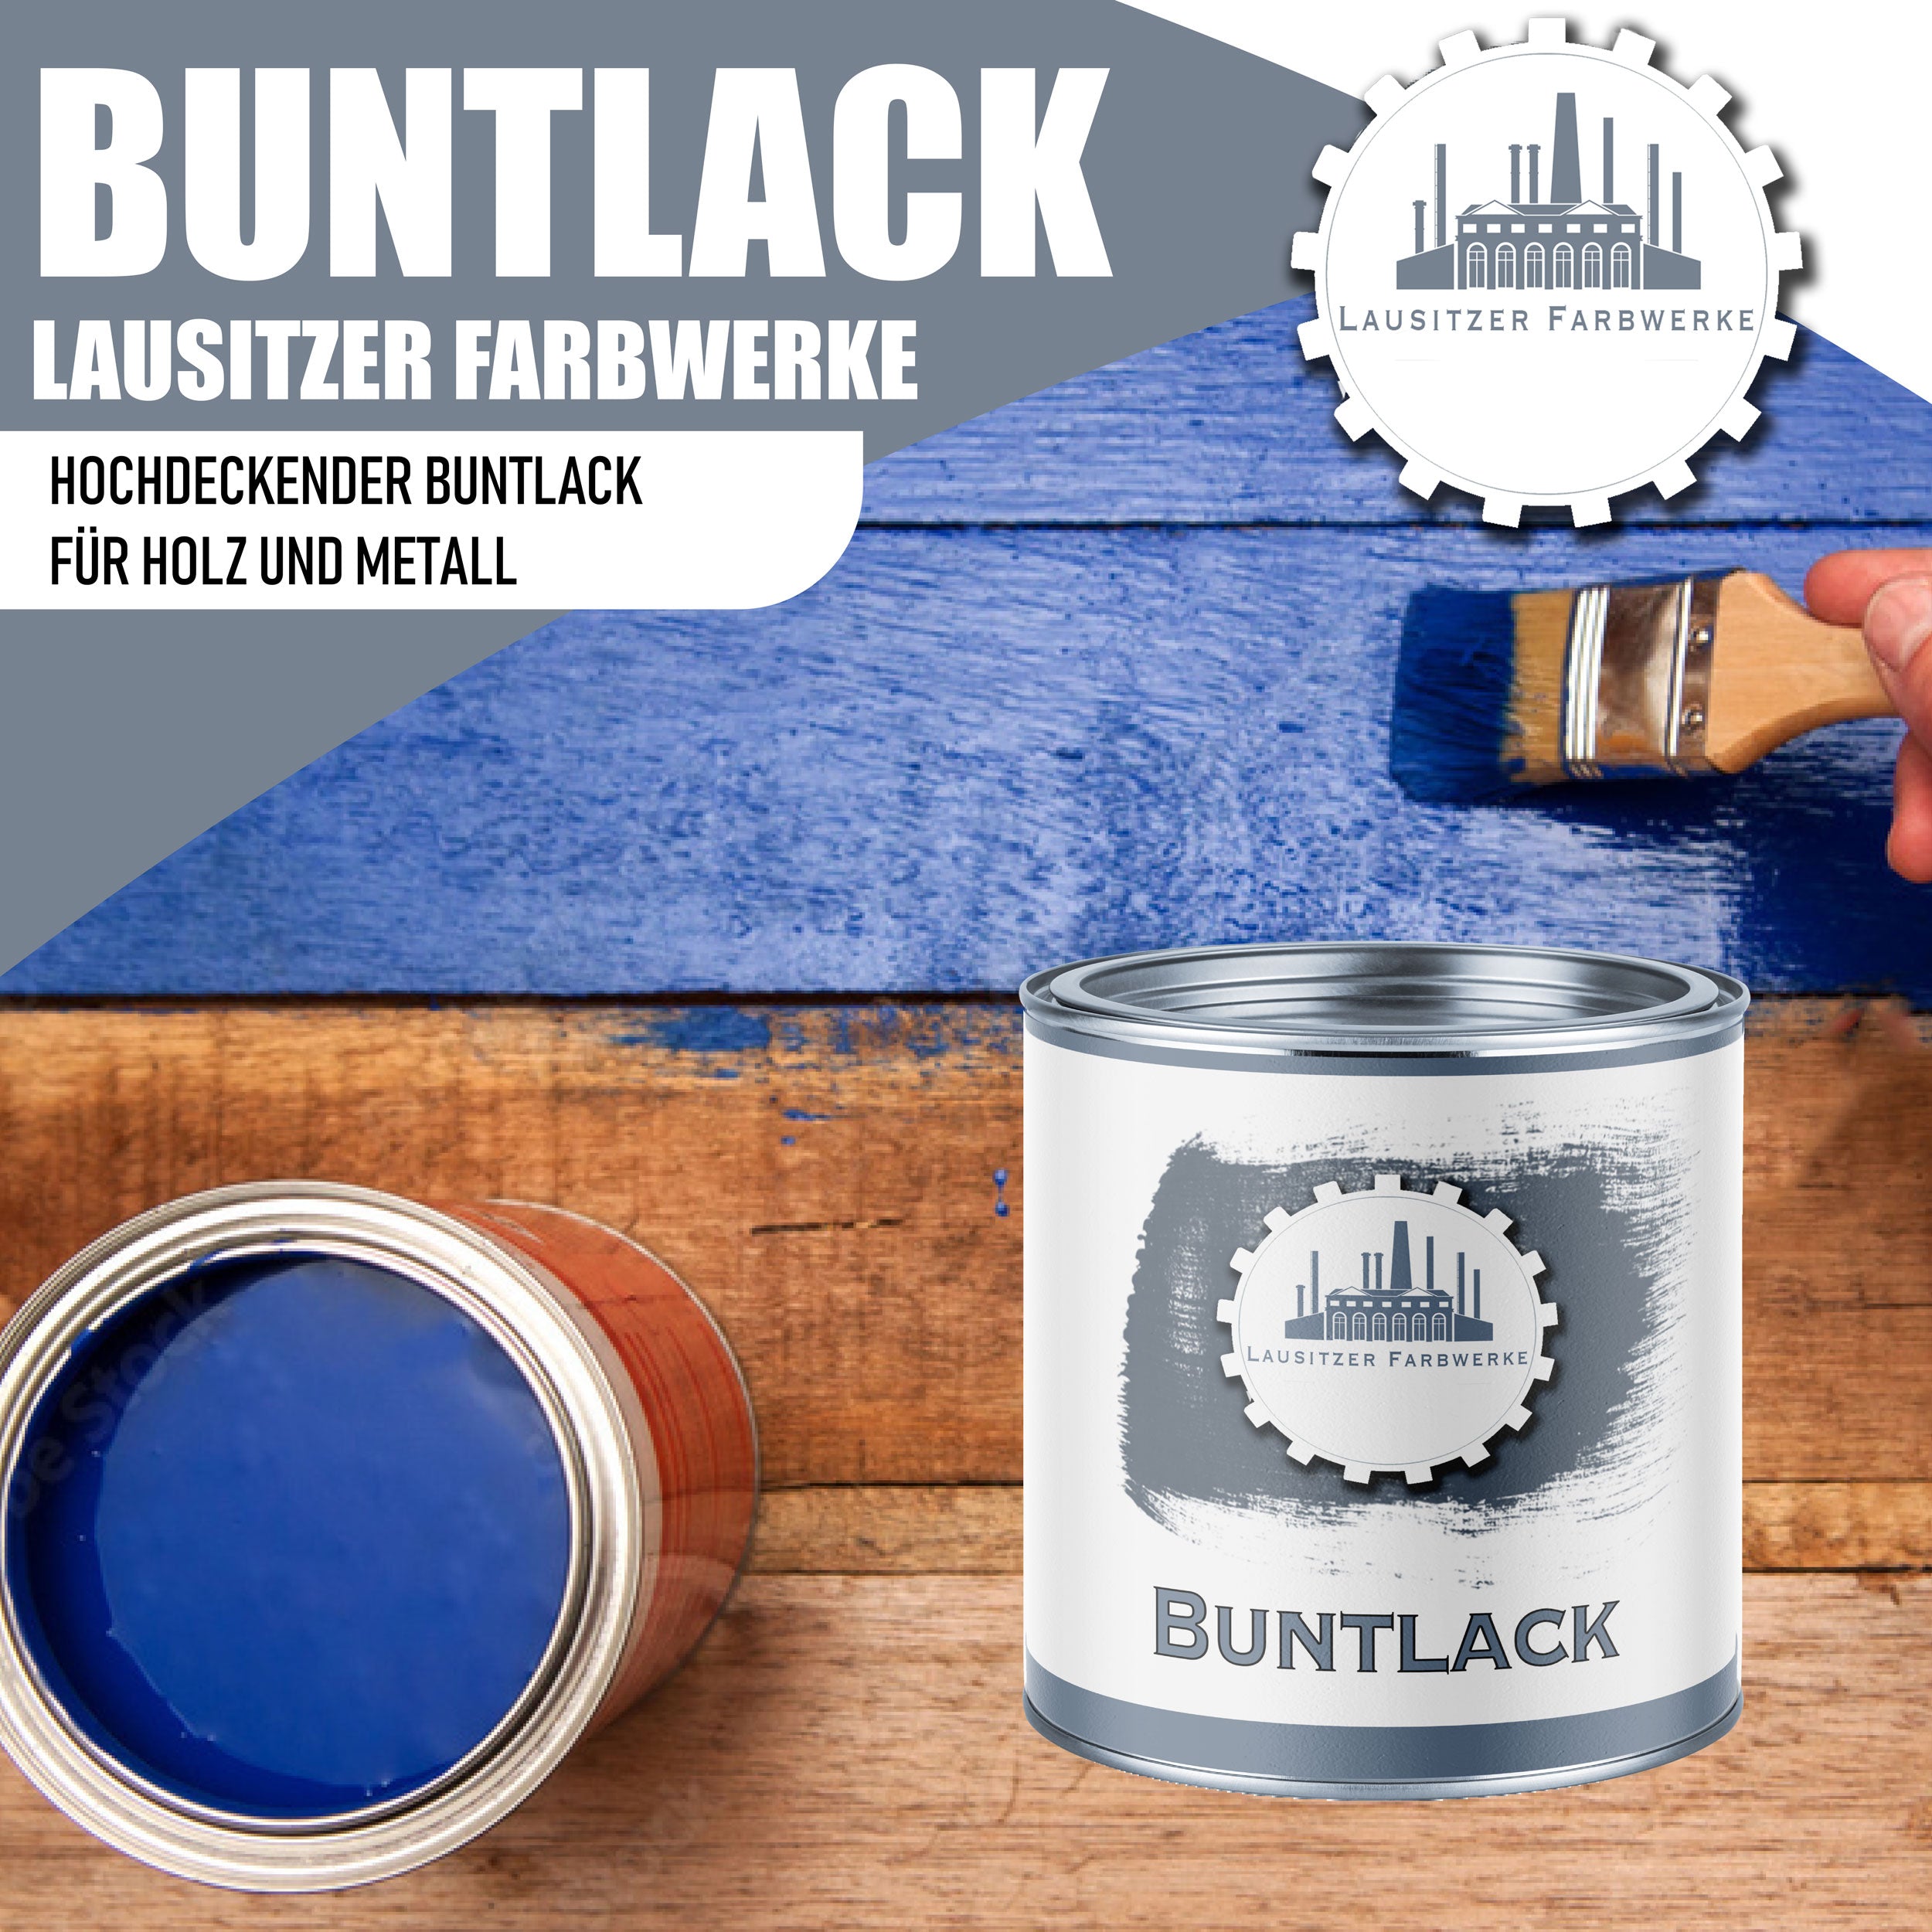 Lausitzer Farbwerke Buntlack mit Lackierset (X300) & Verdünnung (1 L) - 30% Sparangebot - Lausitzer Farbwerke